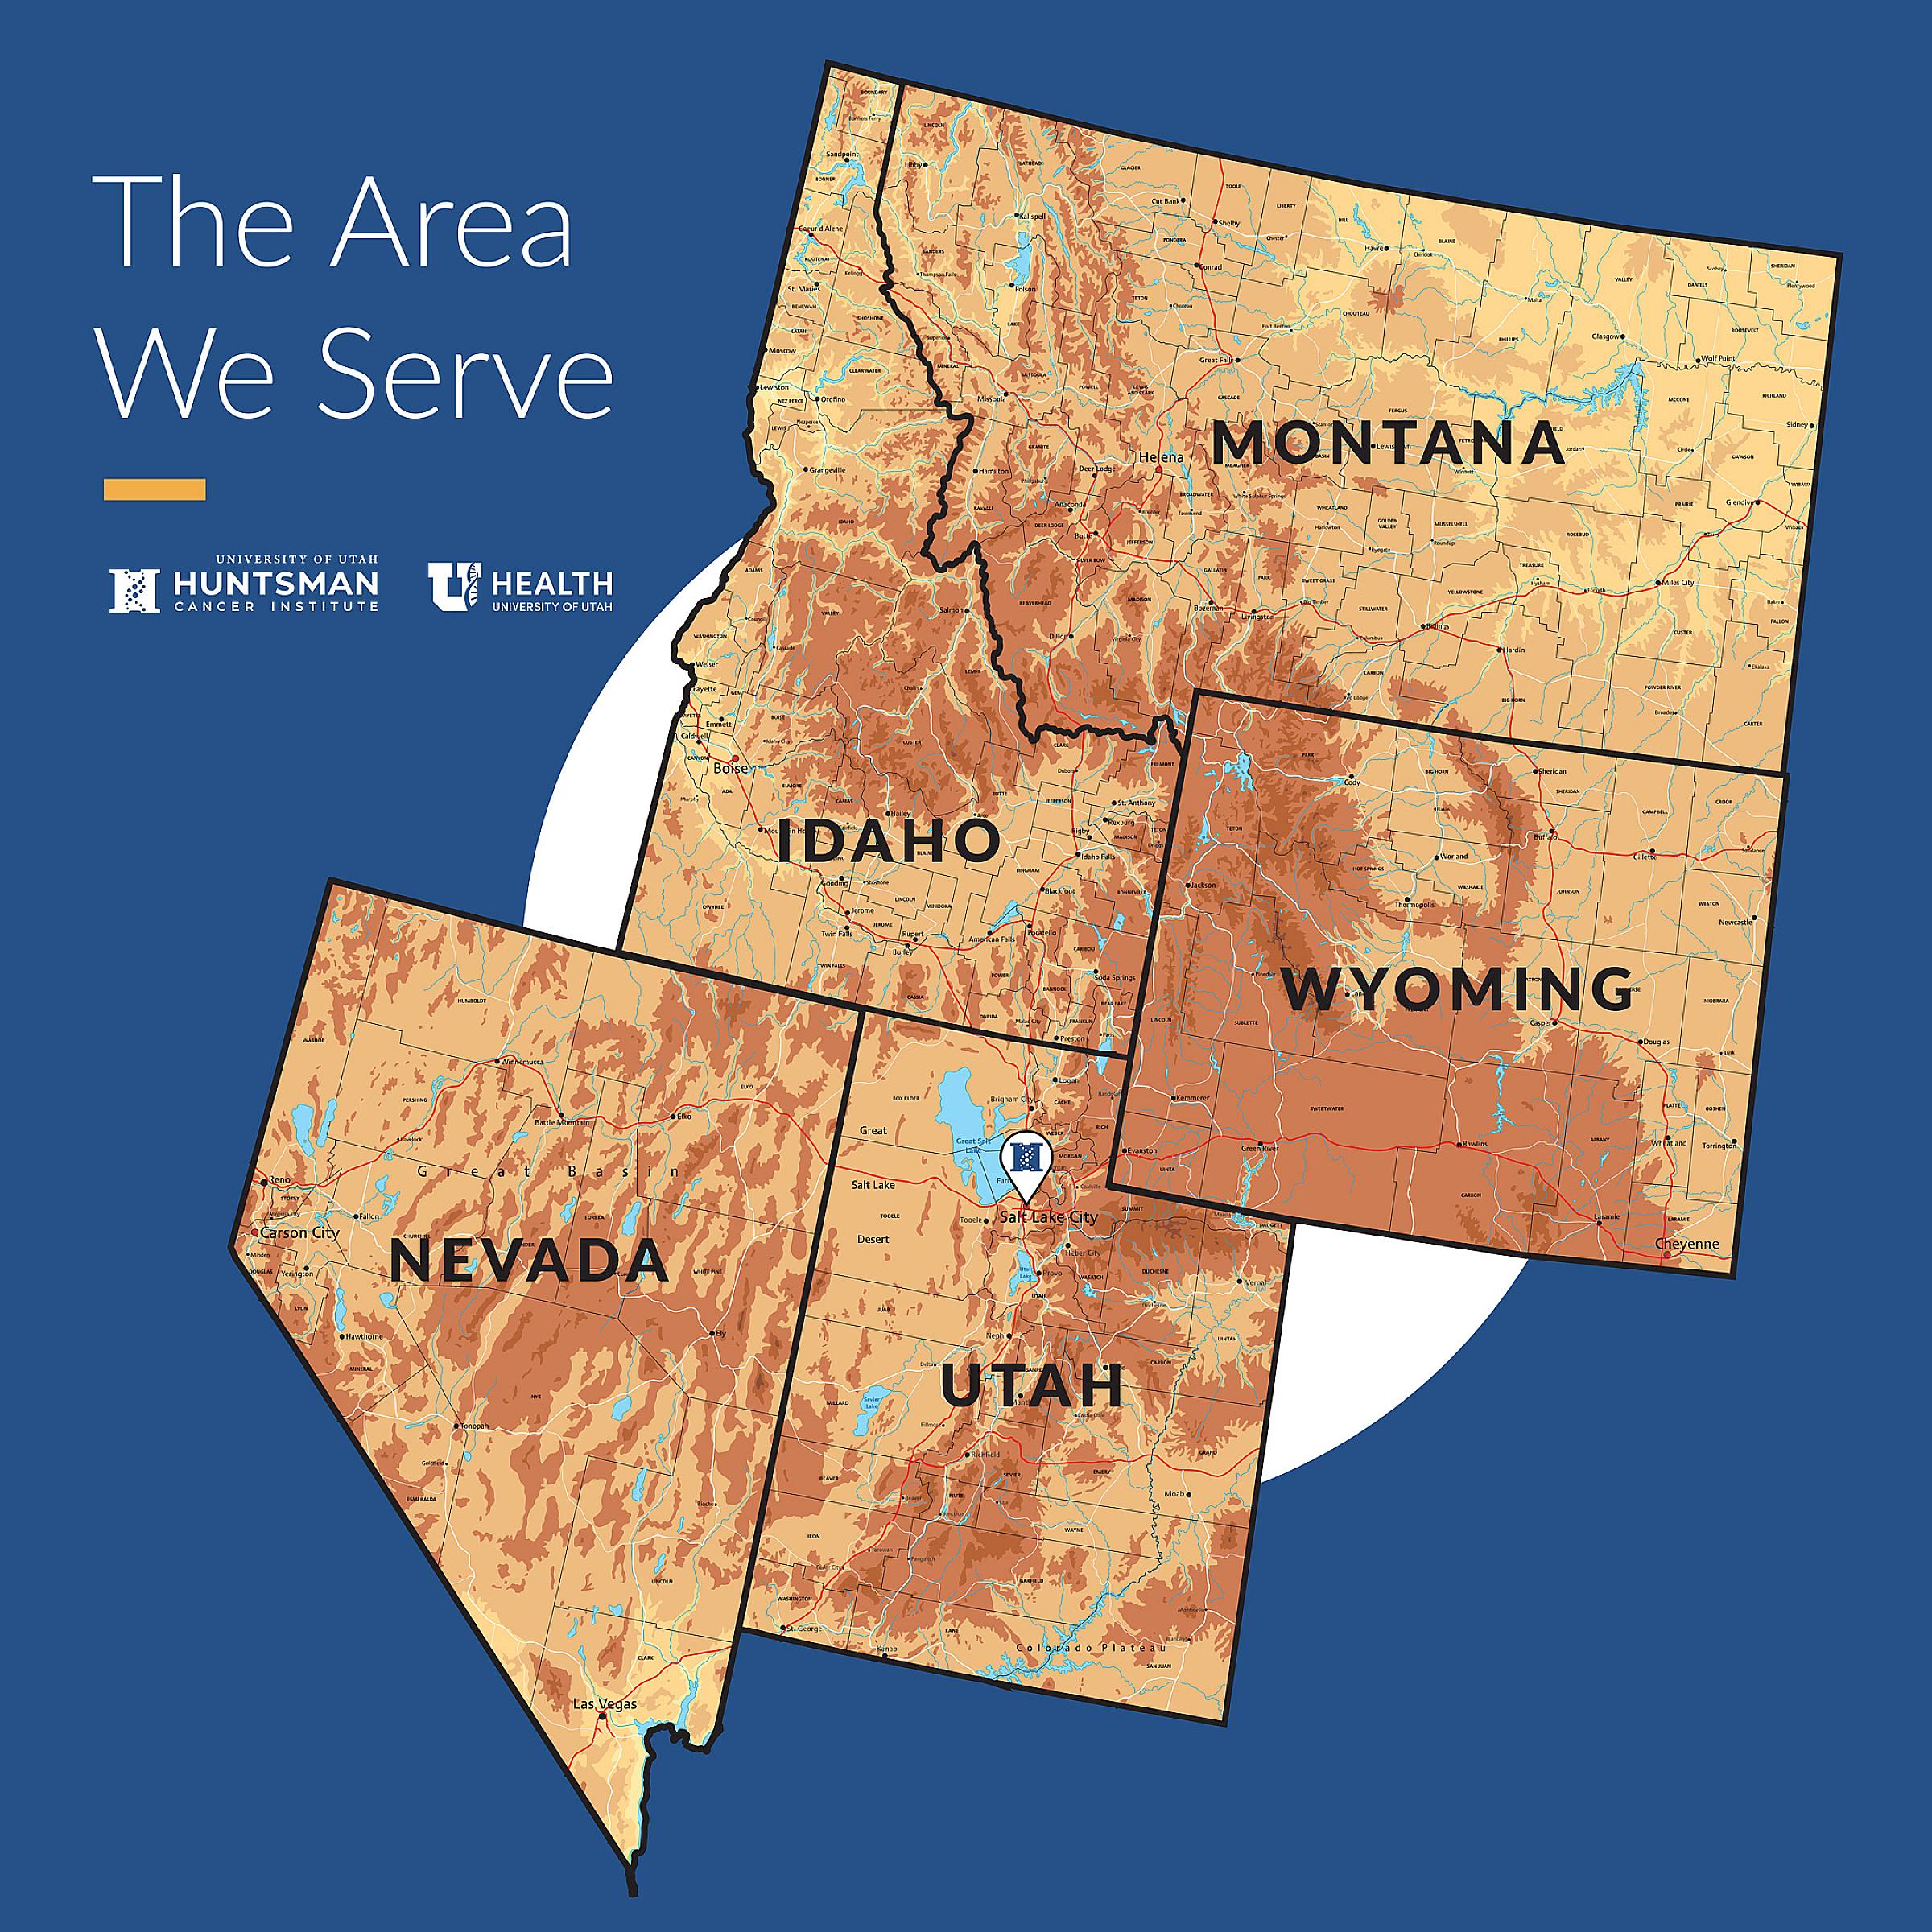 Topographic map of Montana, Idaho, Wyoming, Nevada, and Utah